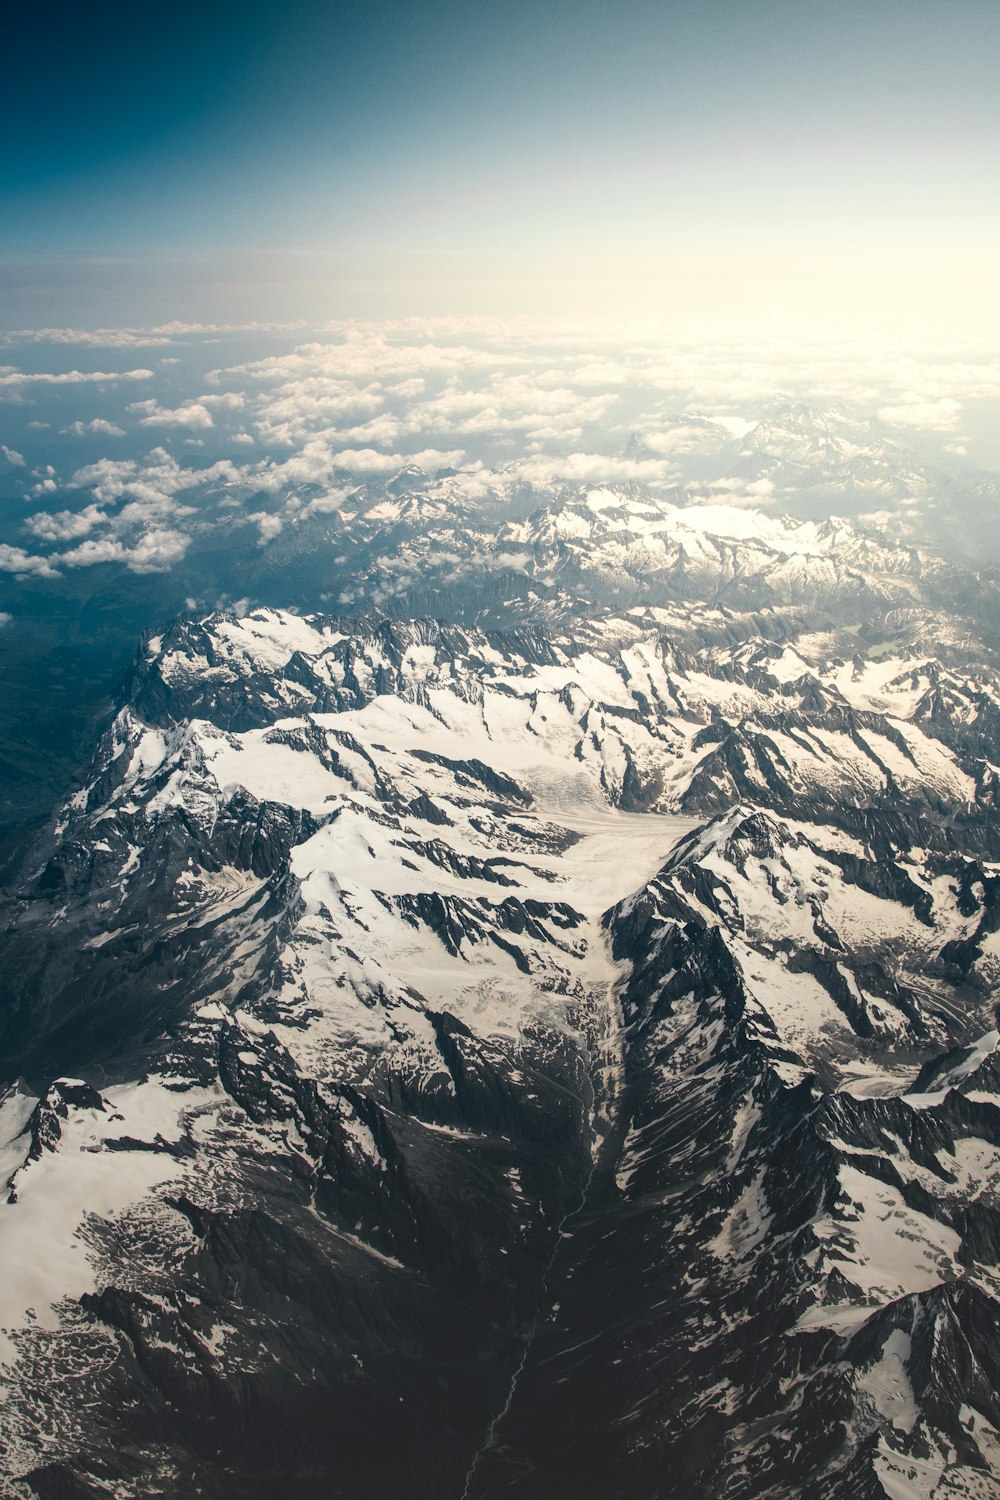 Photographie de vue aérienne d’une montagne recouverte de neige pendant la journée